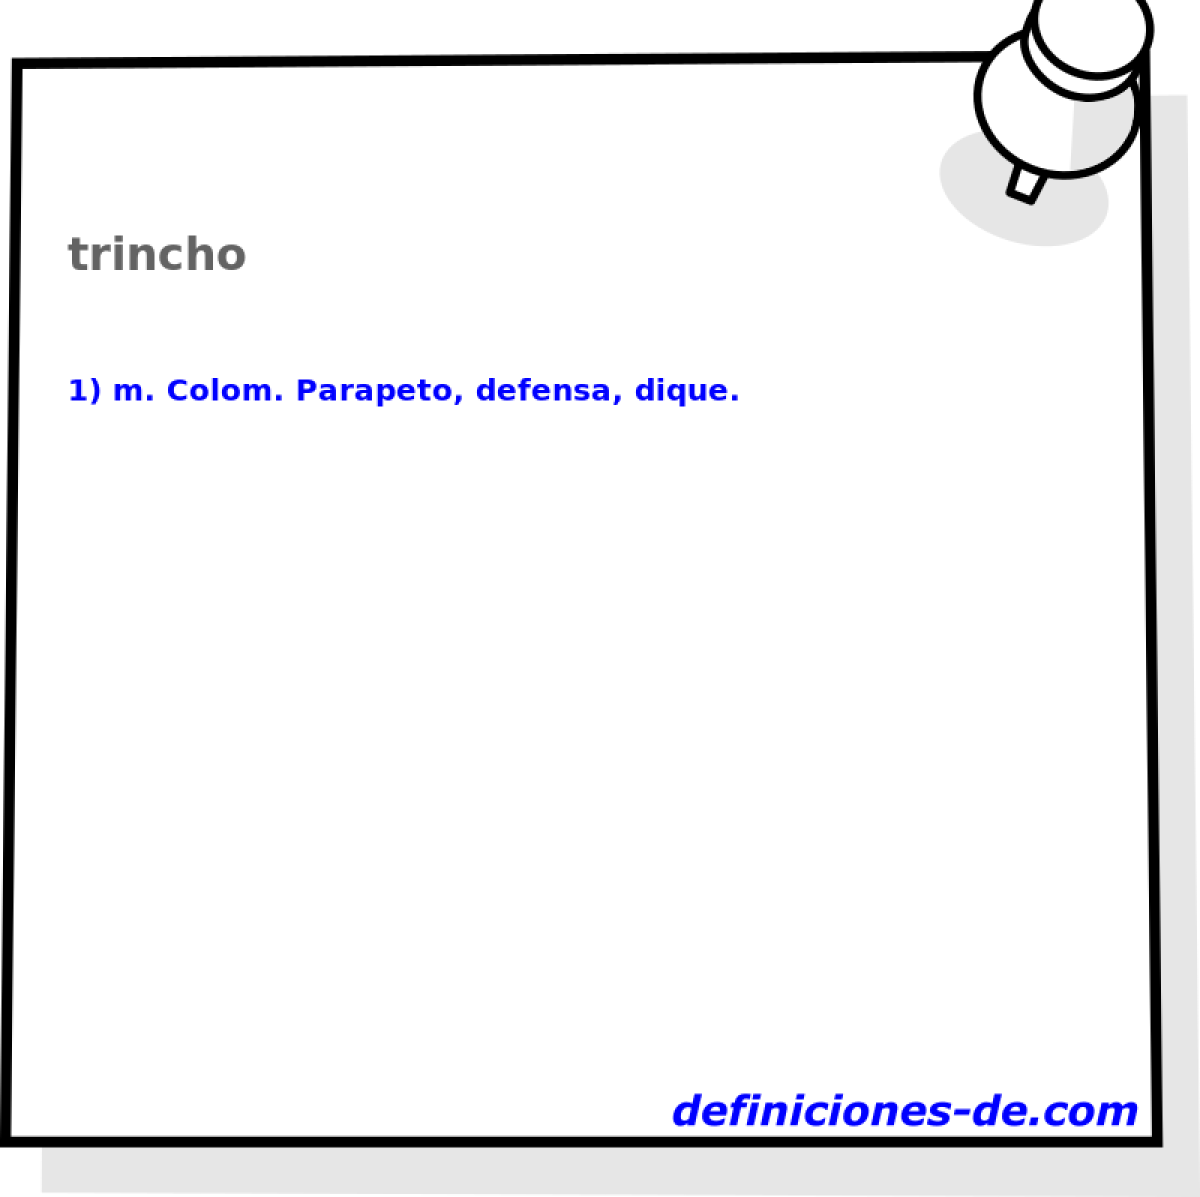 trincho 